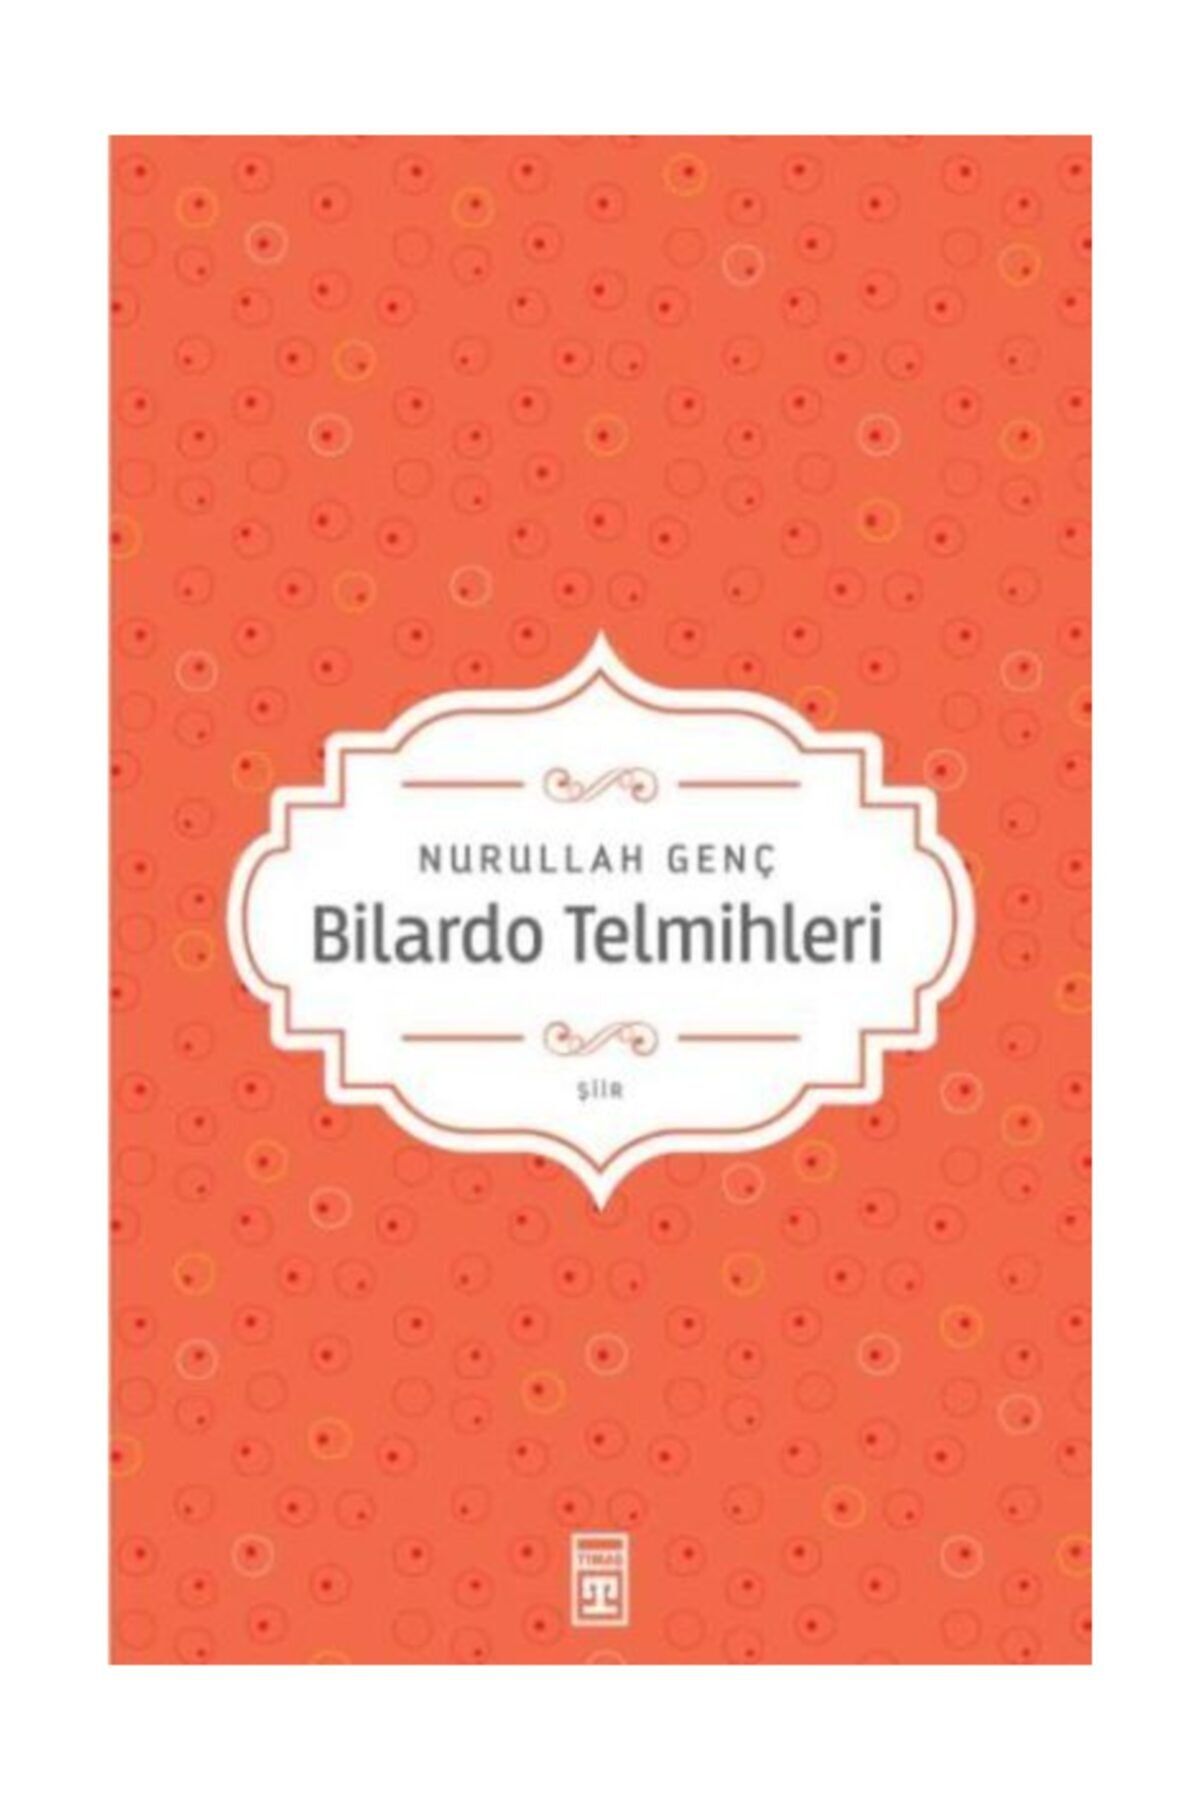 Timaş Yayınları Bilardo Telmihleri / Nurullah Genç /